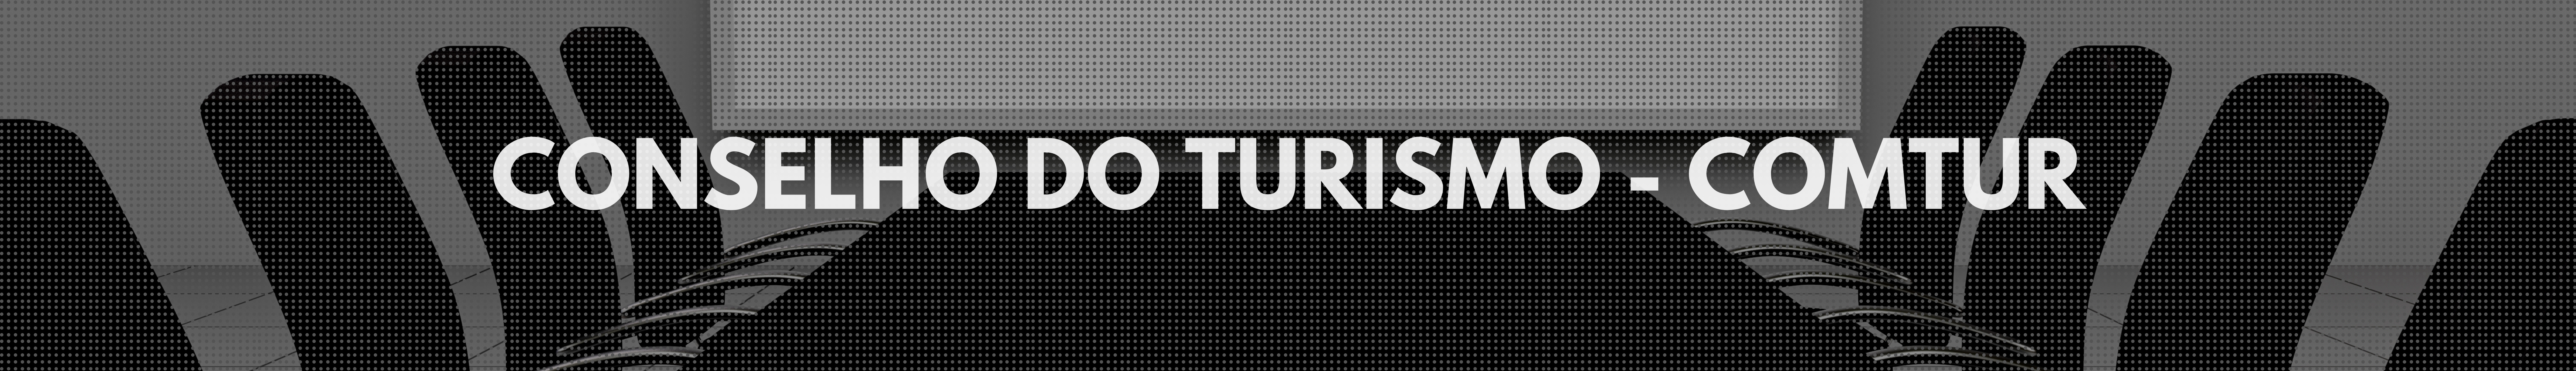 Conselho do Turismo - COMTUR